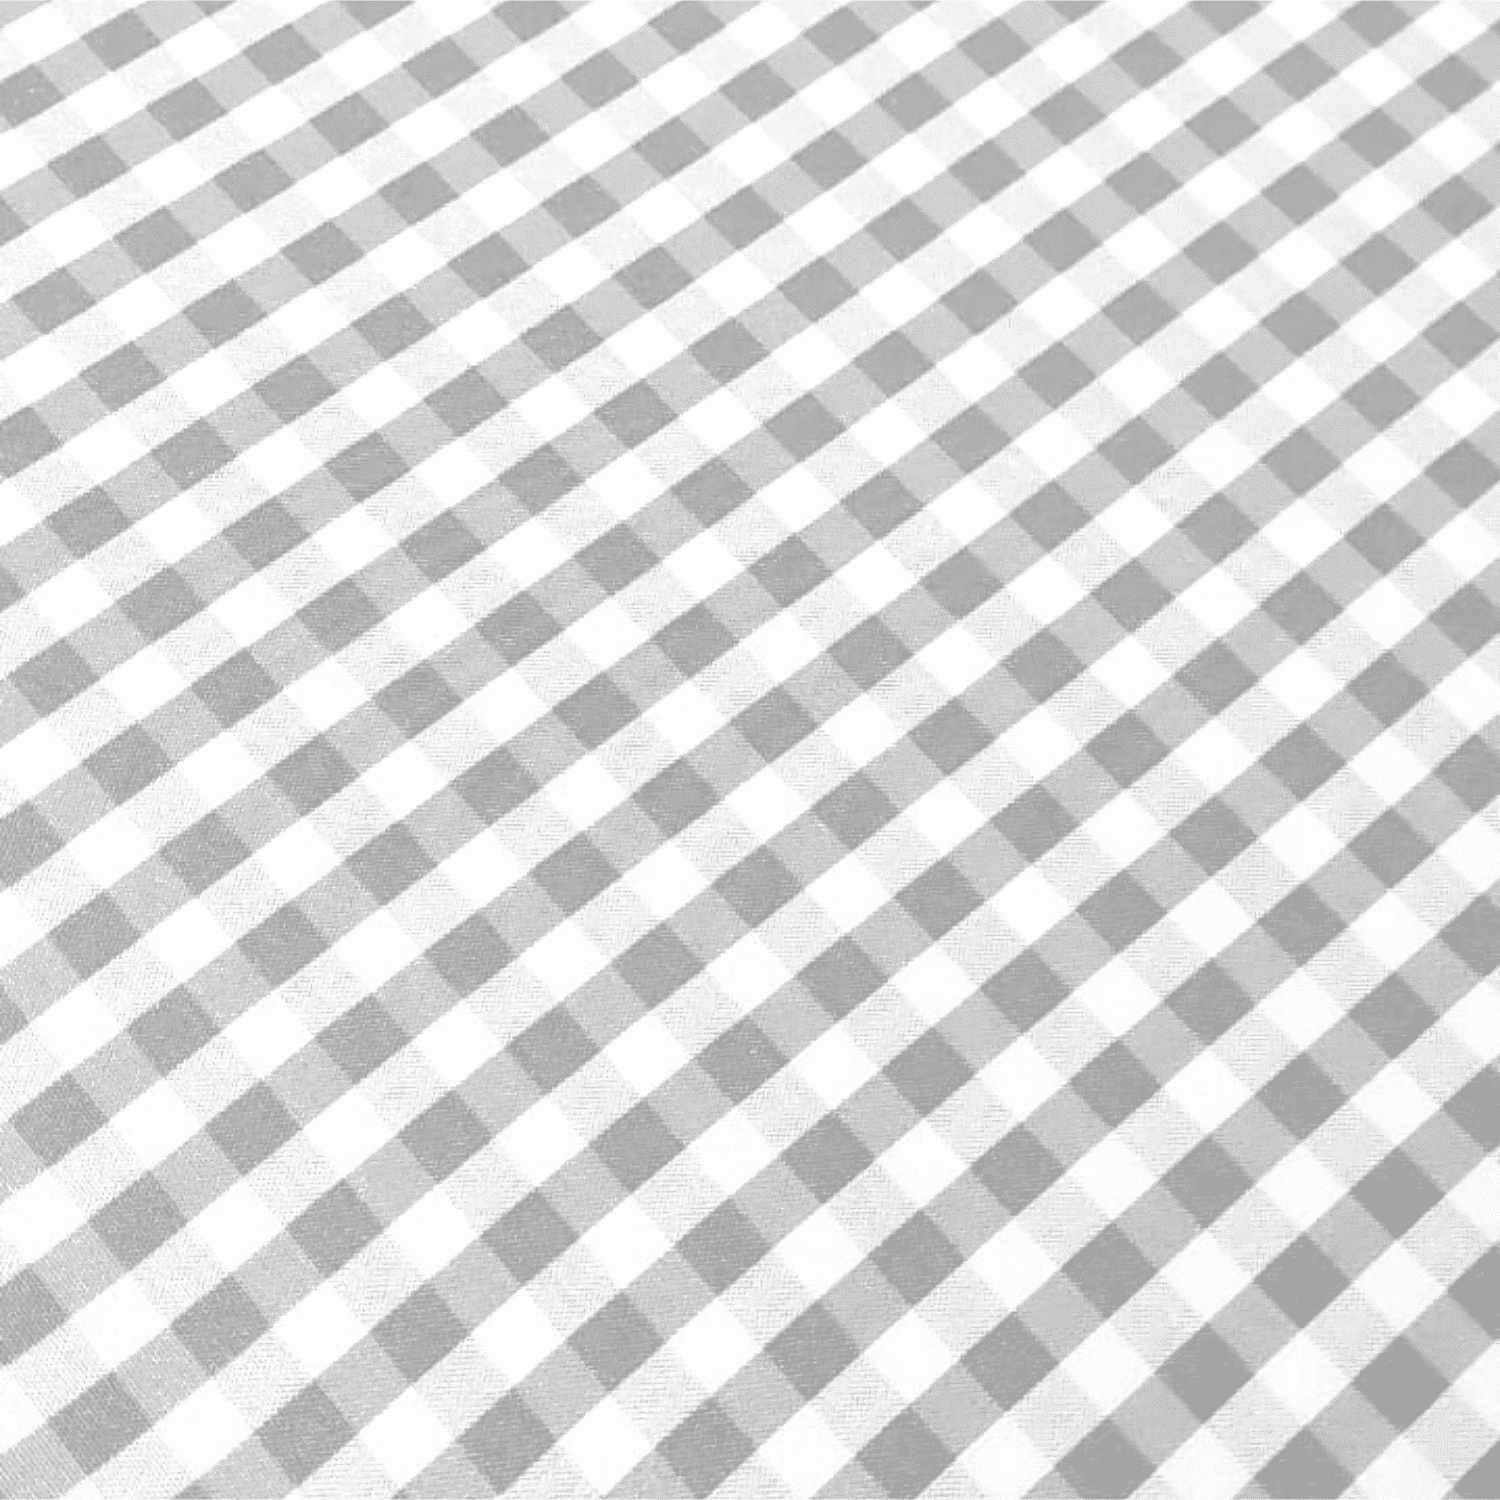 quadretto-grigio-austin-tovaglia-antimacchia-idrorepellente-quadratini-geometrico-bianco-grigio-dettaglio